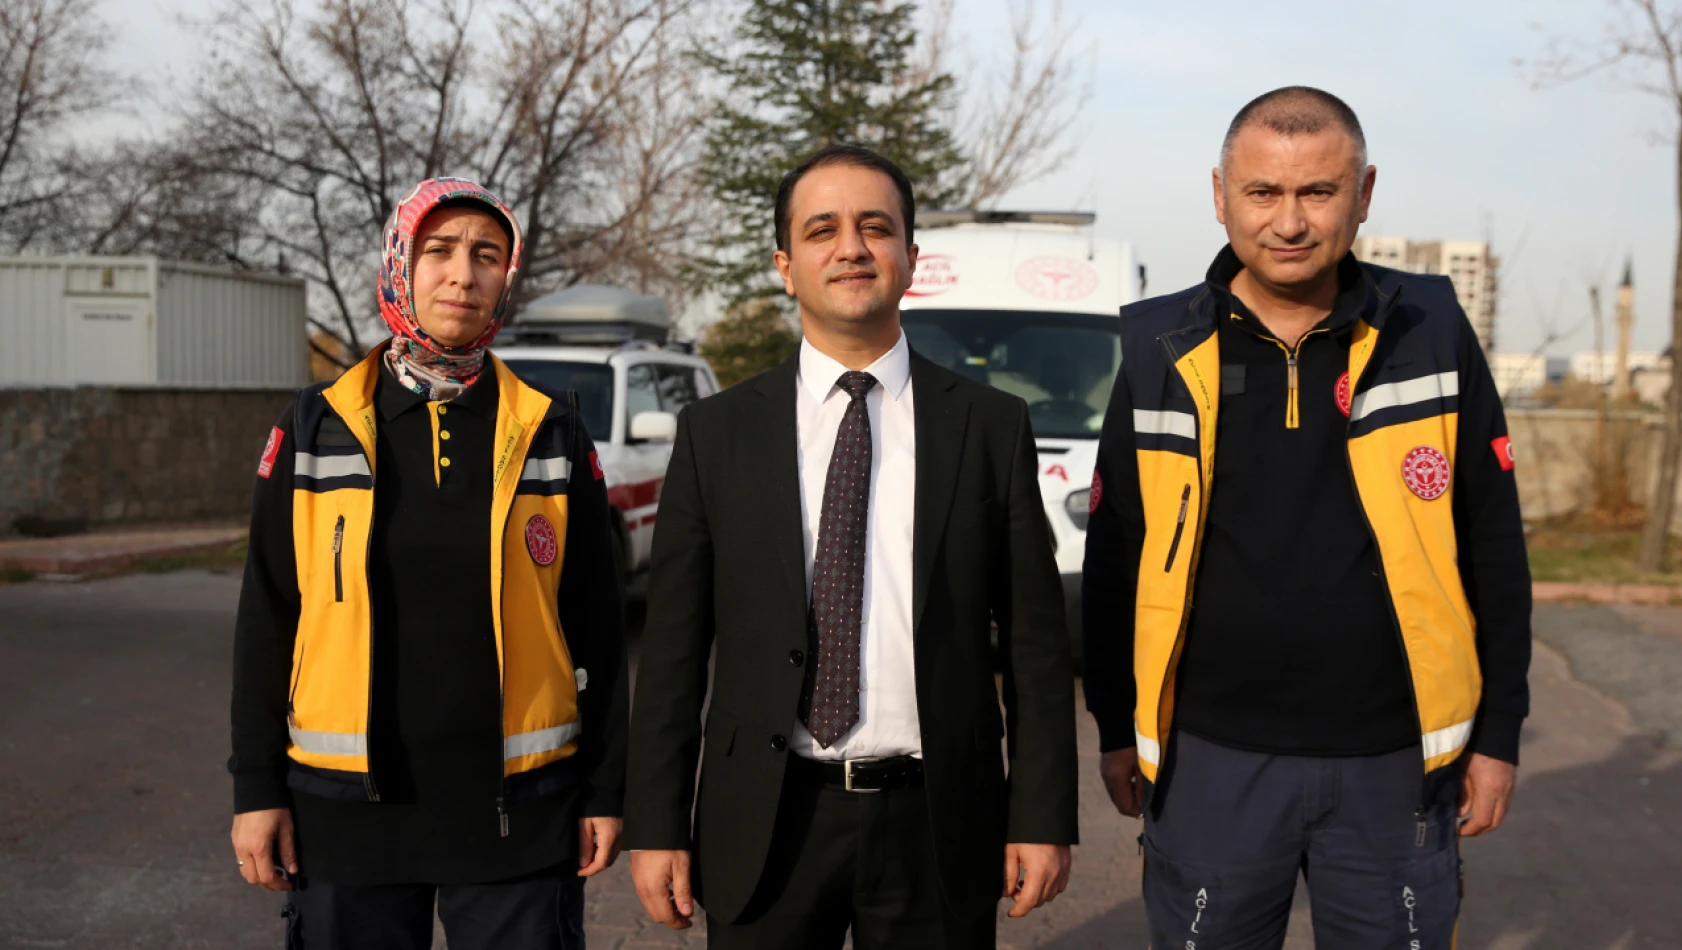 Kayseri'de 112 Acil Sağlık Hizmetleri son 9 ayda kaç çağrı aldı?